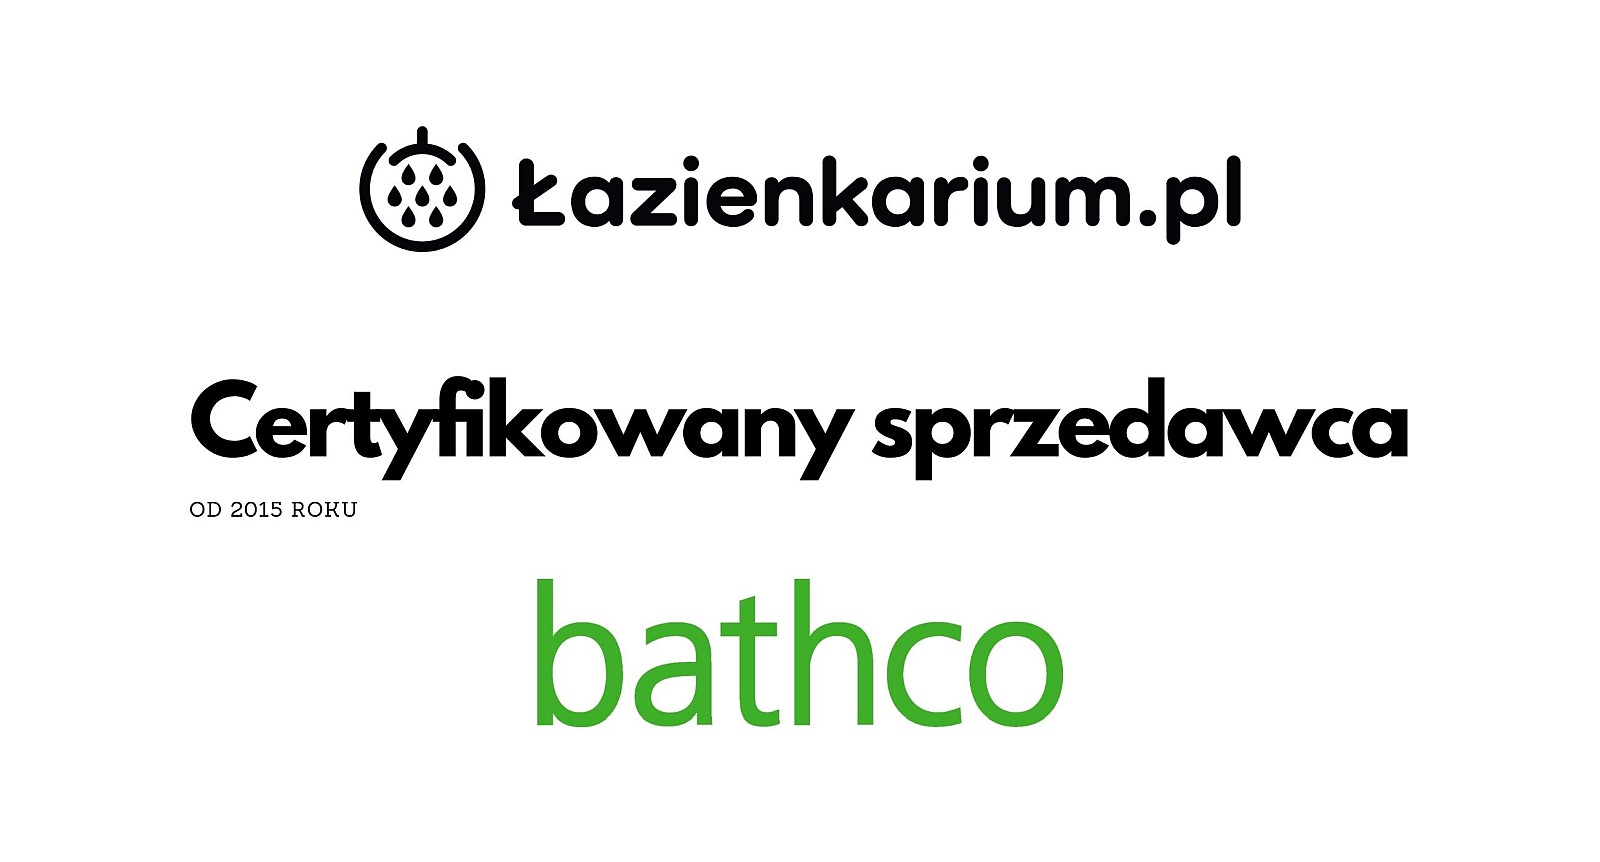 Bathco Spain Dystrybutor Polska Certyfikowany Sprzedawca Zaufany Porfesjonalista lazienkarium.pl